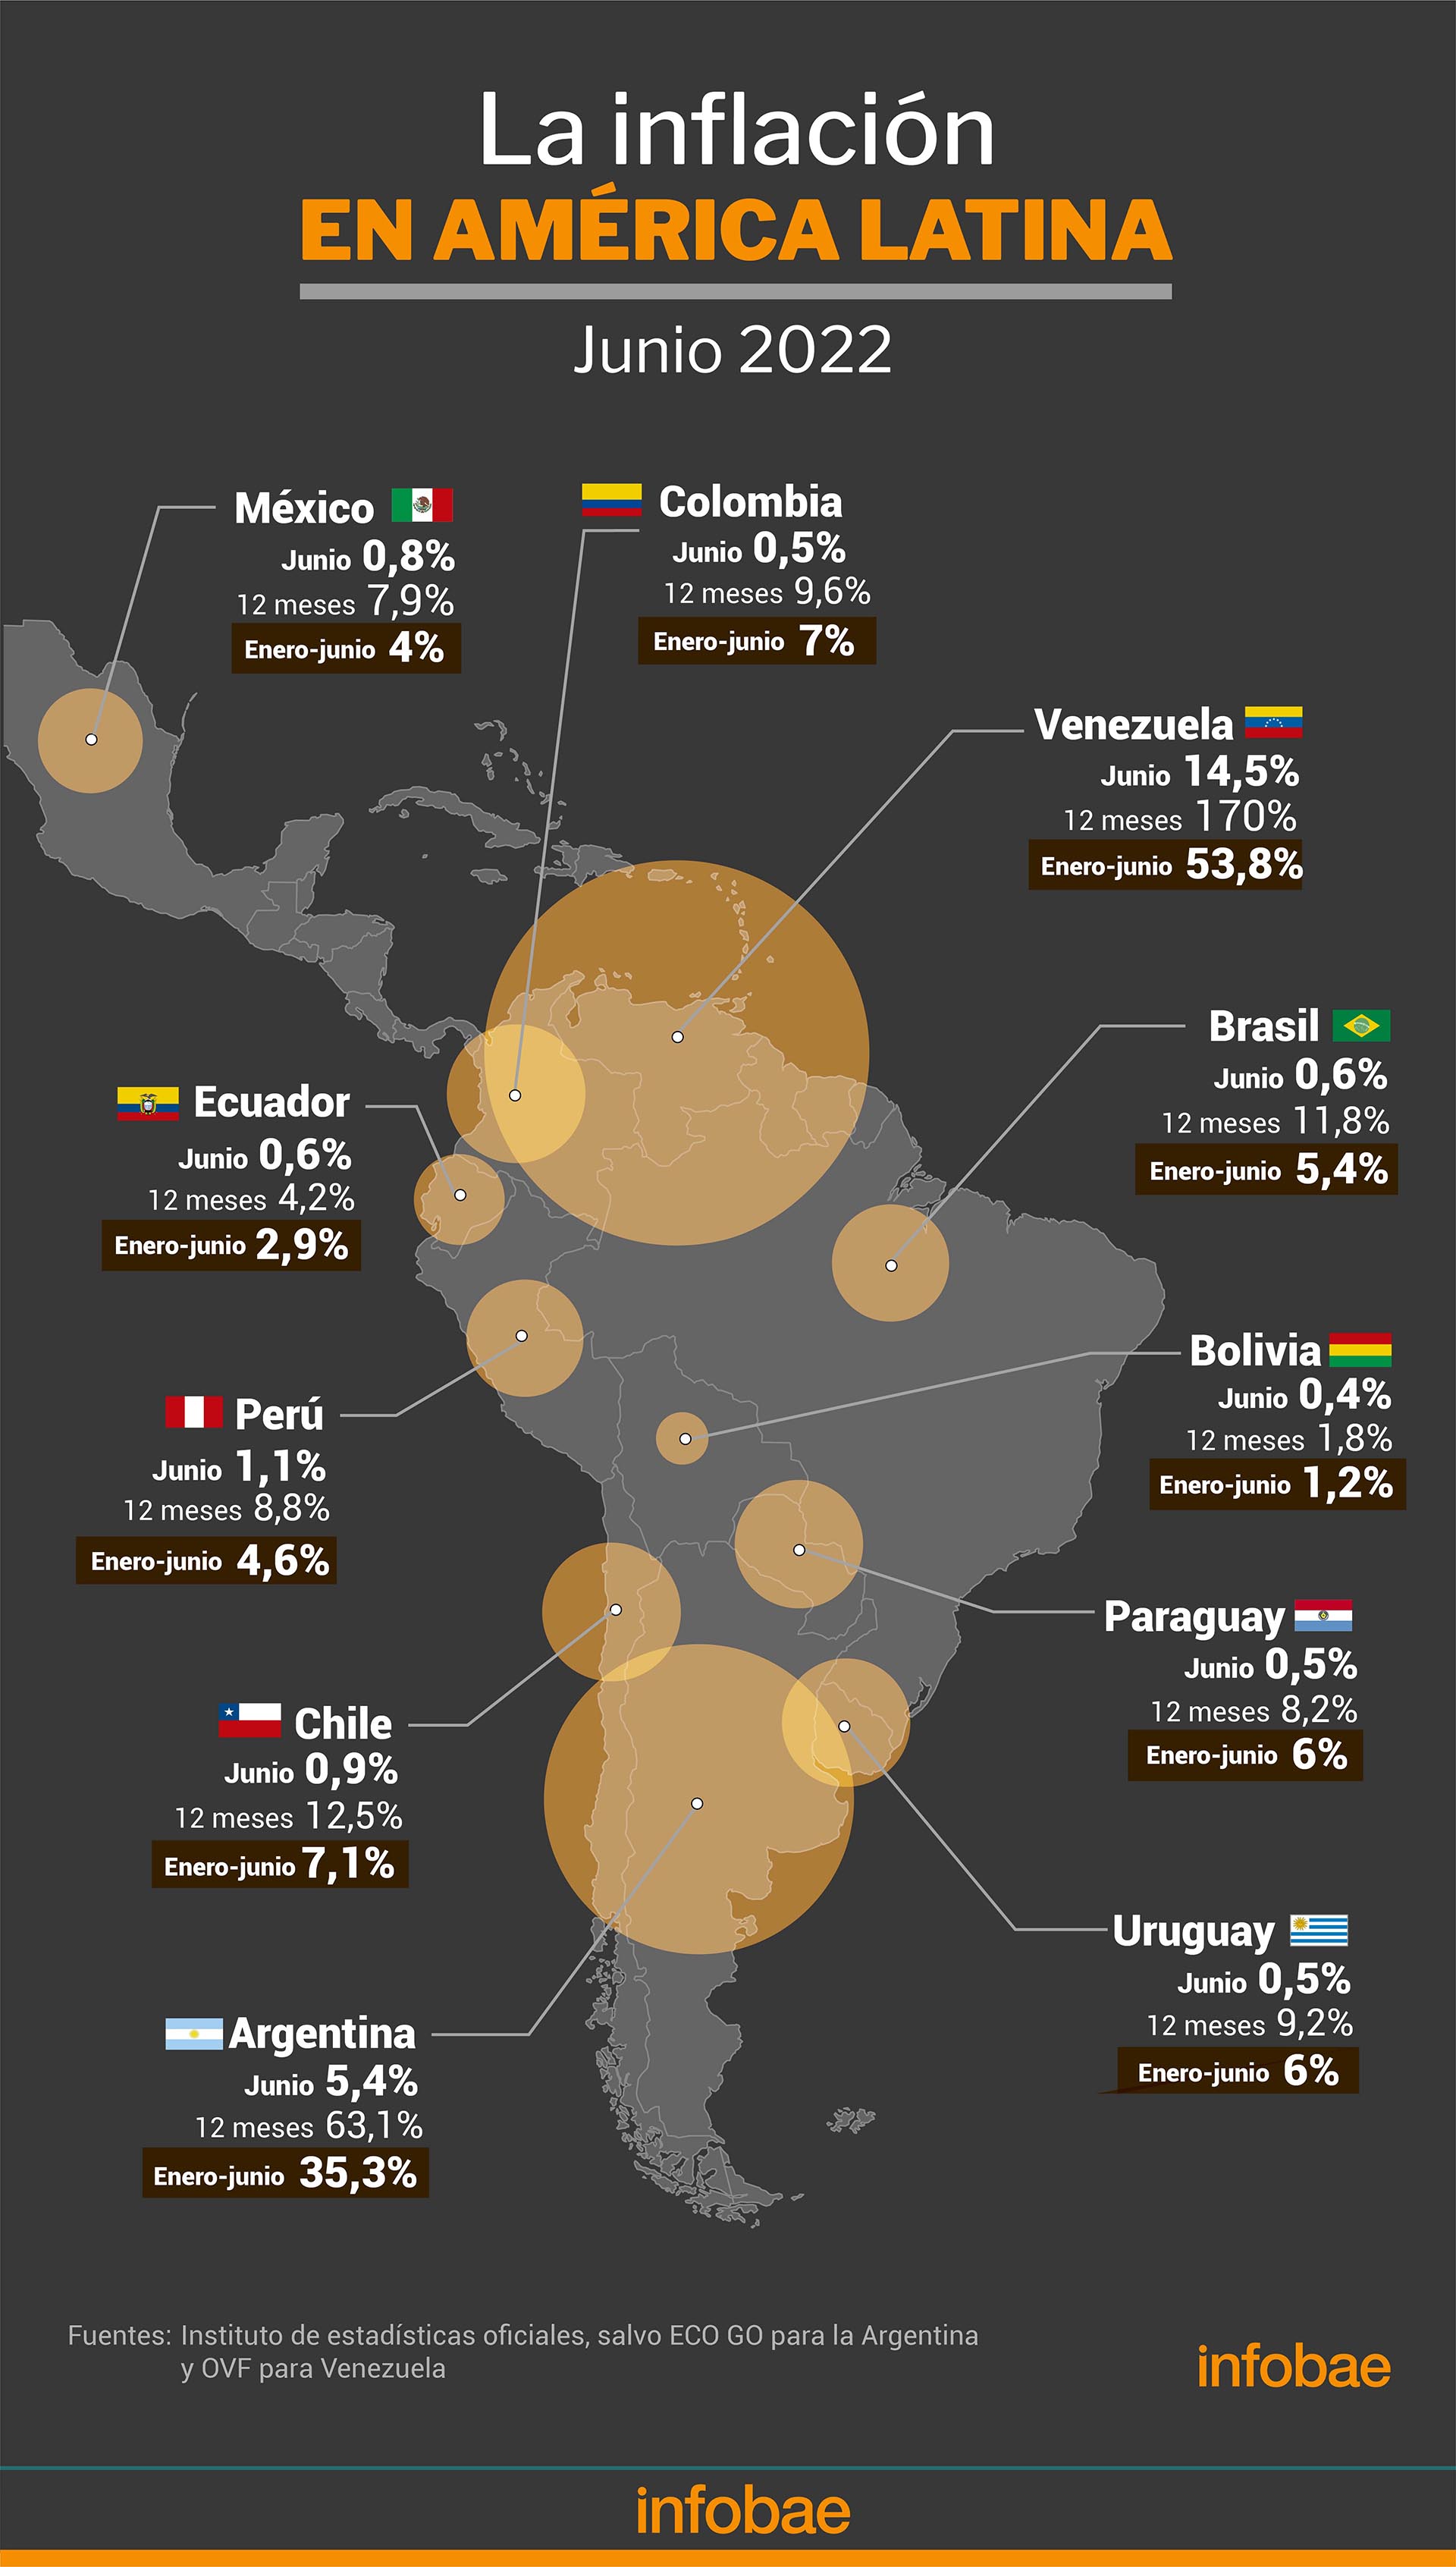 La inflación en junio en América latina
Infografía de Marcelo Regalado
Fuente: institutos de estadística salvo Argentina ECO GO y Venezuela OVF